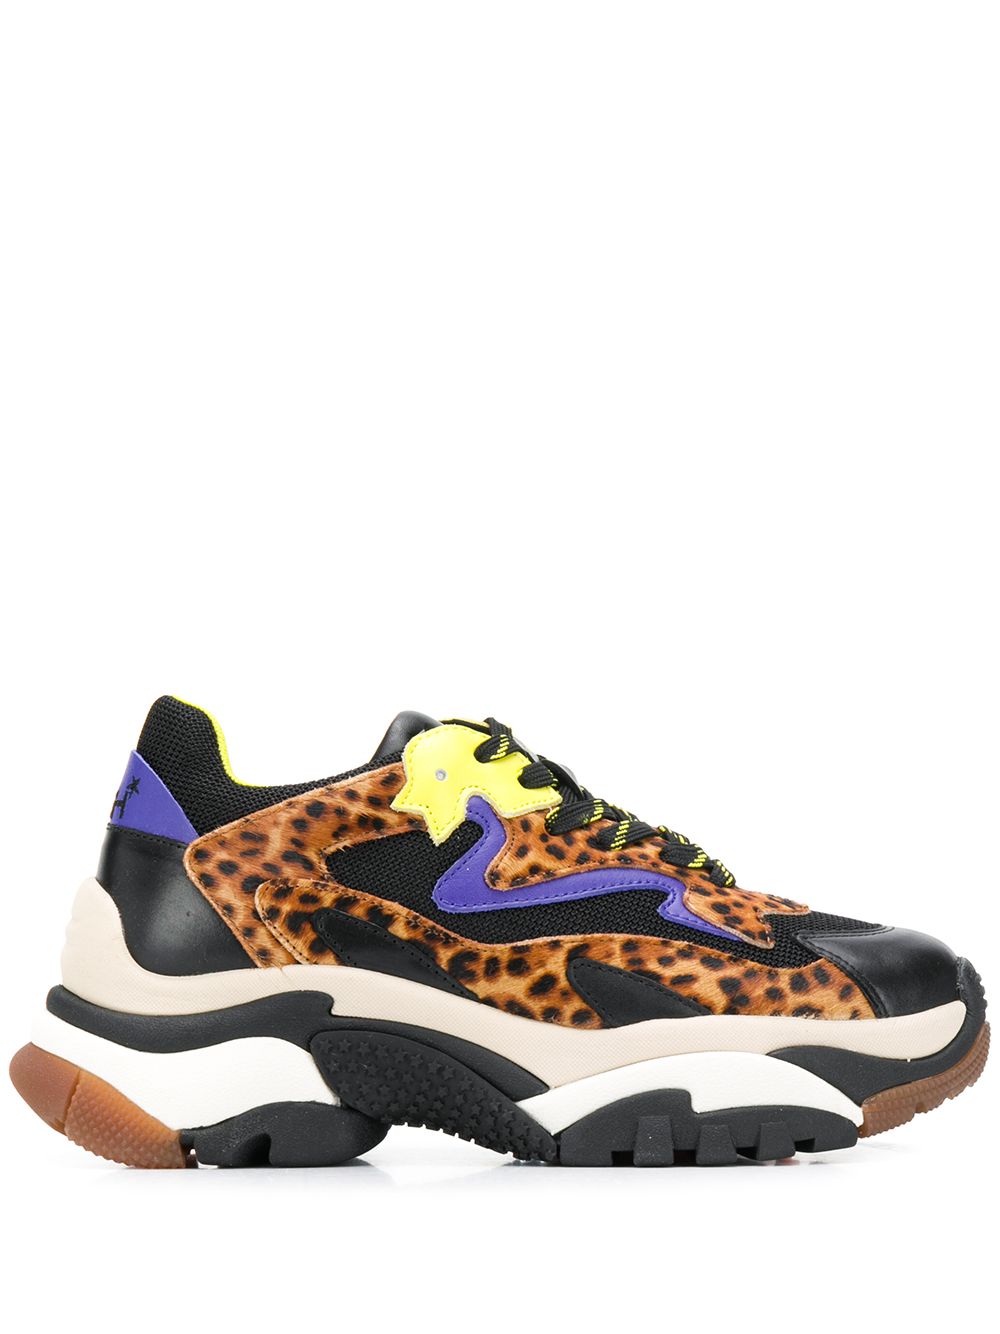 фото Ash массивные кроссовки с леопардовым принтом